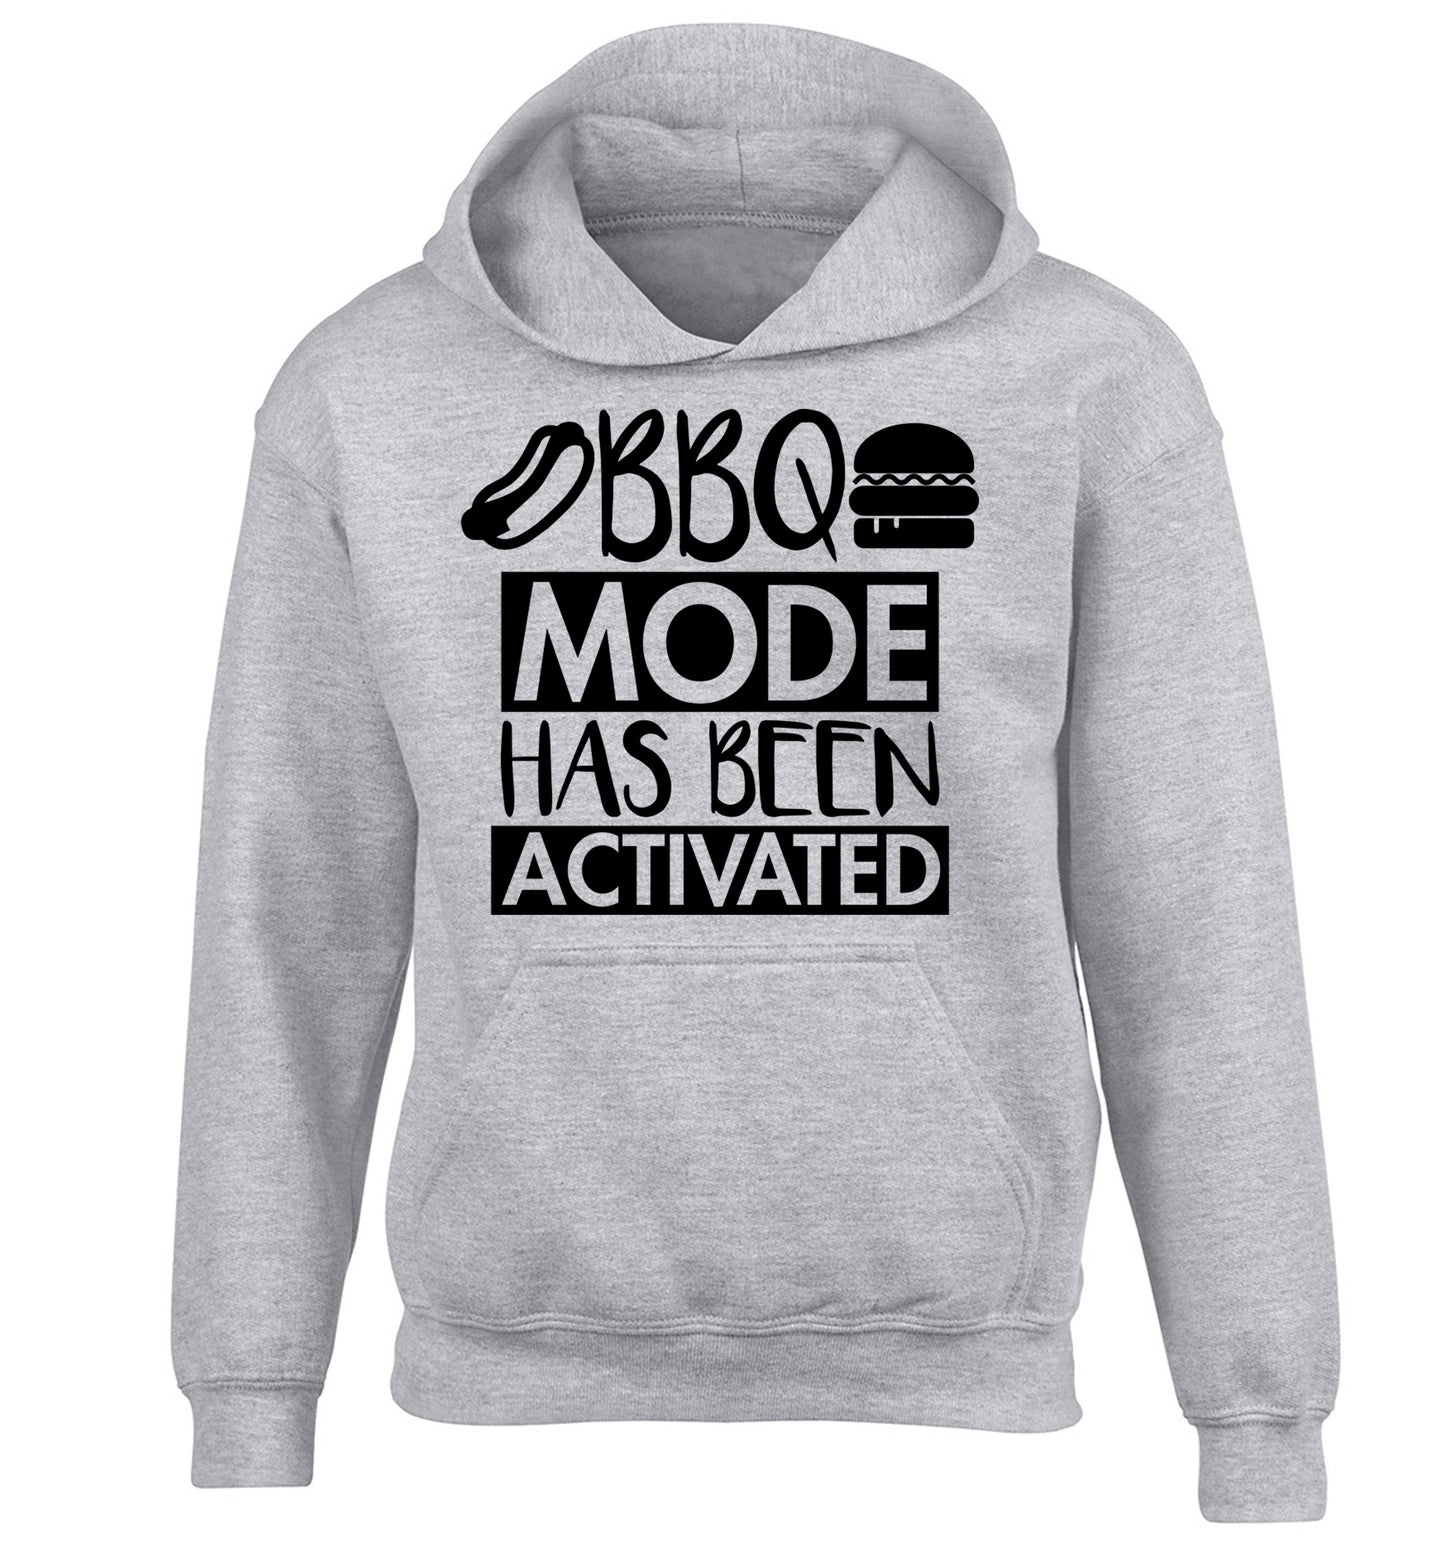 Bbq mode has been activated children's grey hoodie 12-14 Years